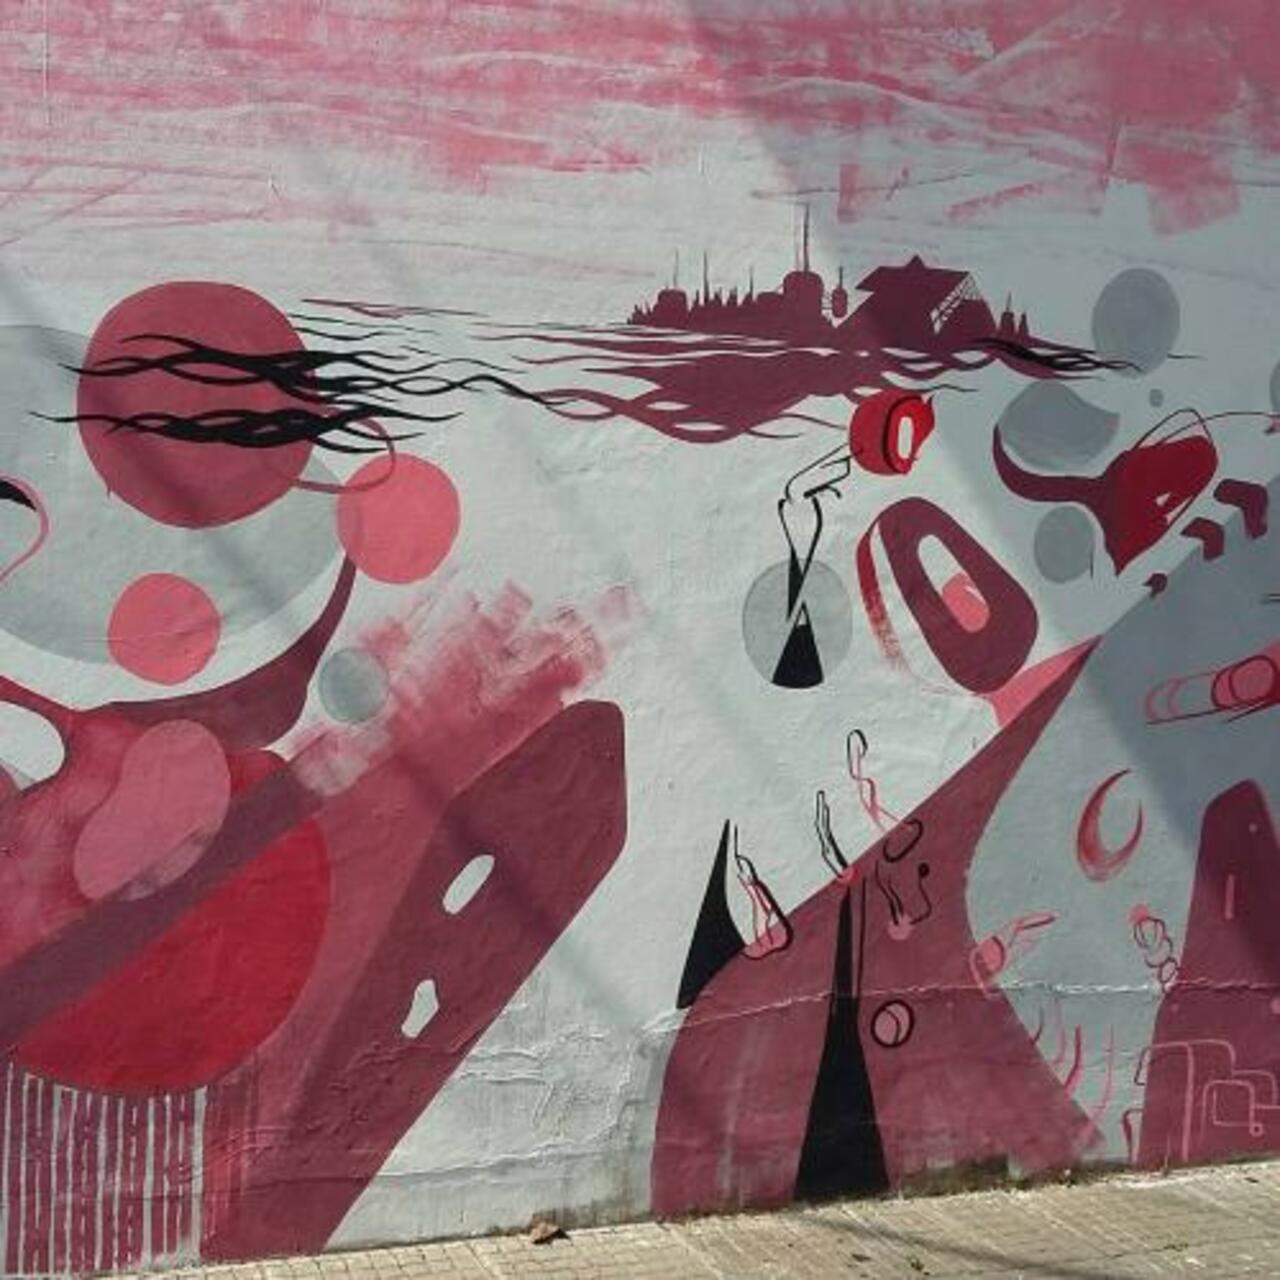 marcescarinci#streetart #graffiti #urbanart#mural

#streetart… http://streetiam1.tumblr.com/post/130410772846 http://t.co/cddakLx43l